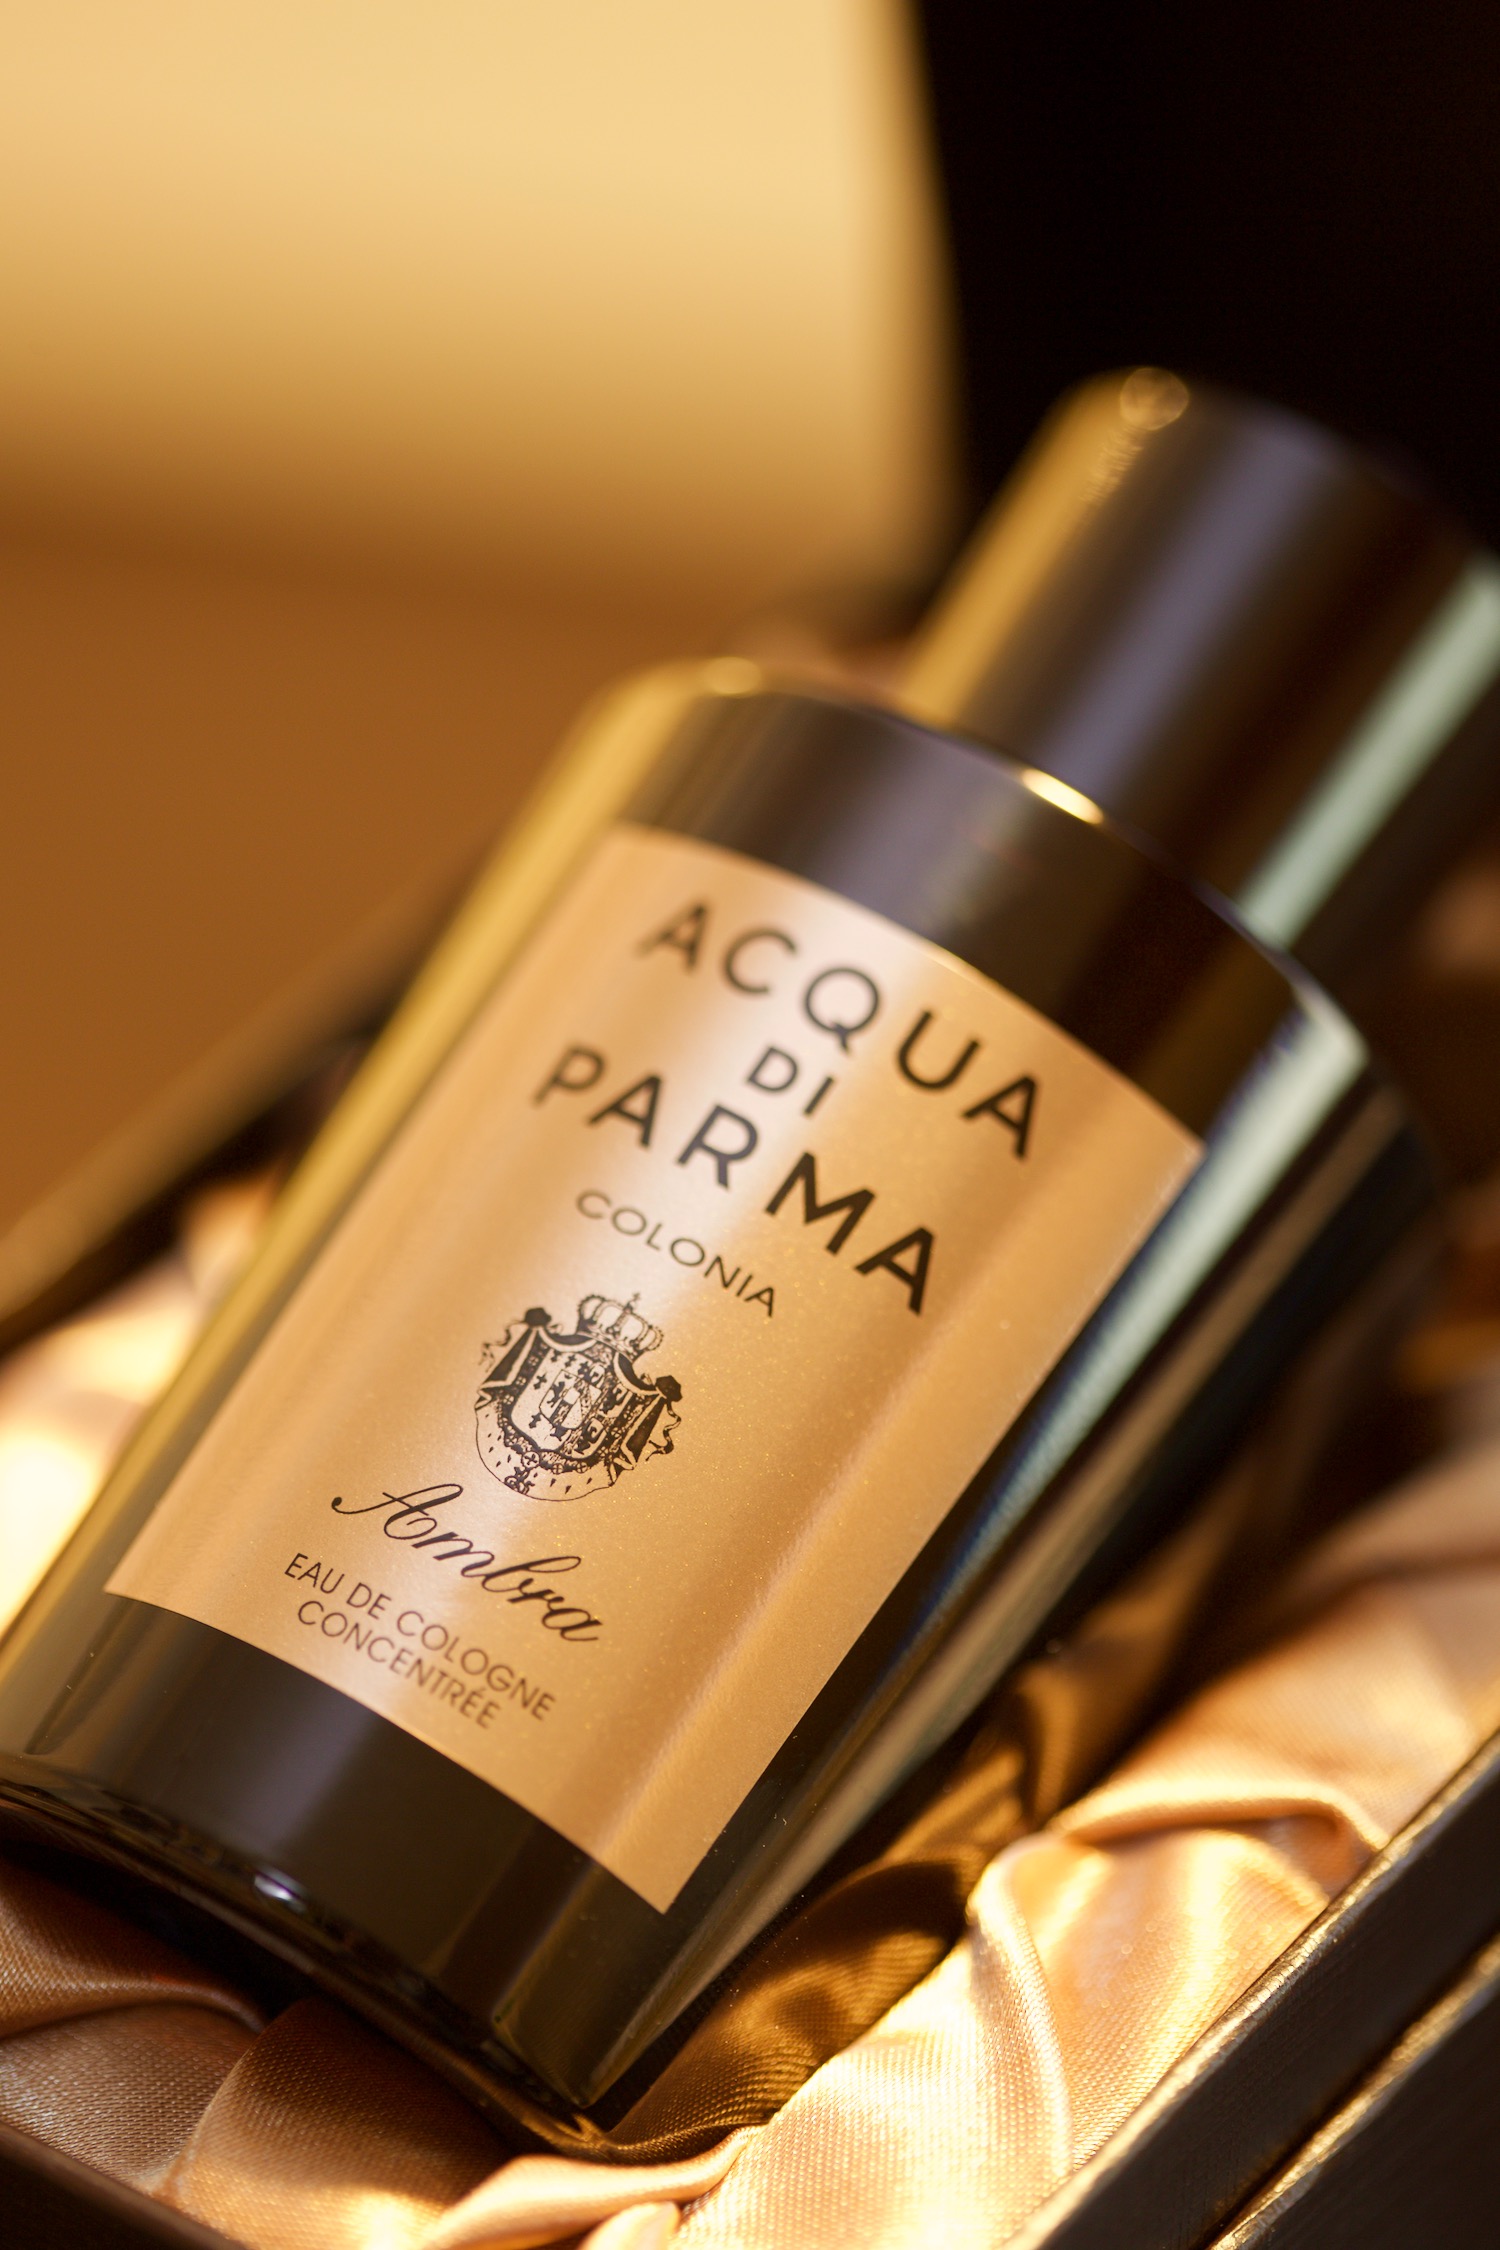 Acqua Di Parma S Colonia Ambra 15 Life With Perfumes